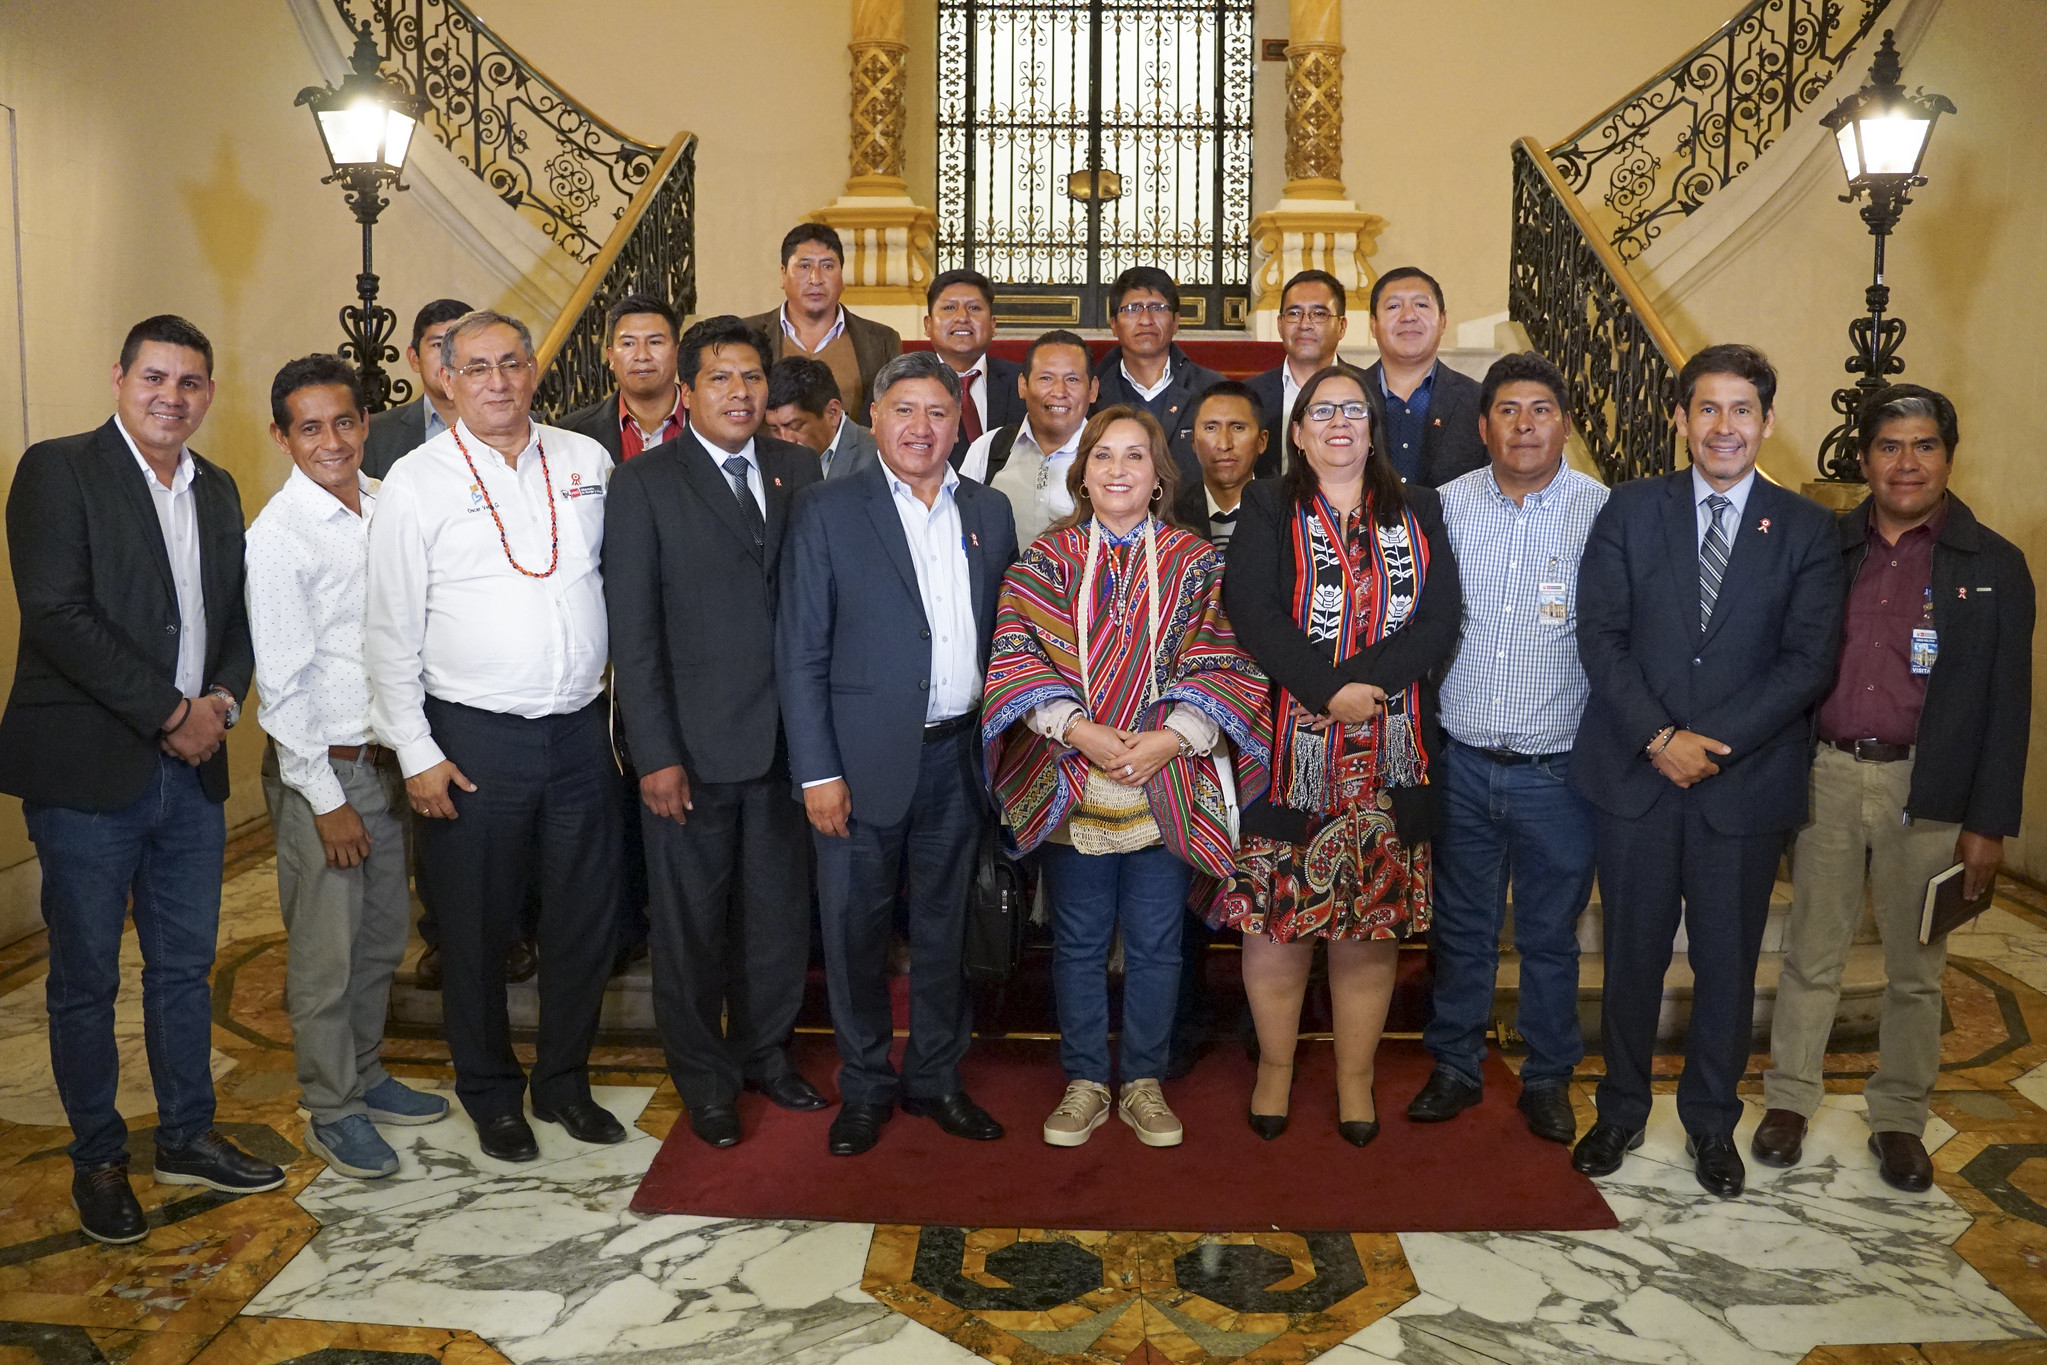 Presidenta Boluarte se reunió con alcaldes de Puno a fin de articular esfuerzos para impulsar proyectos de desarrollo